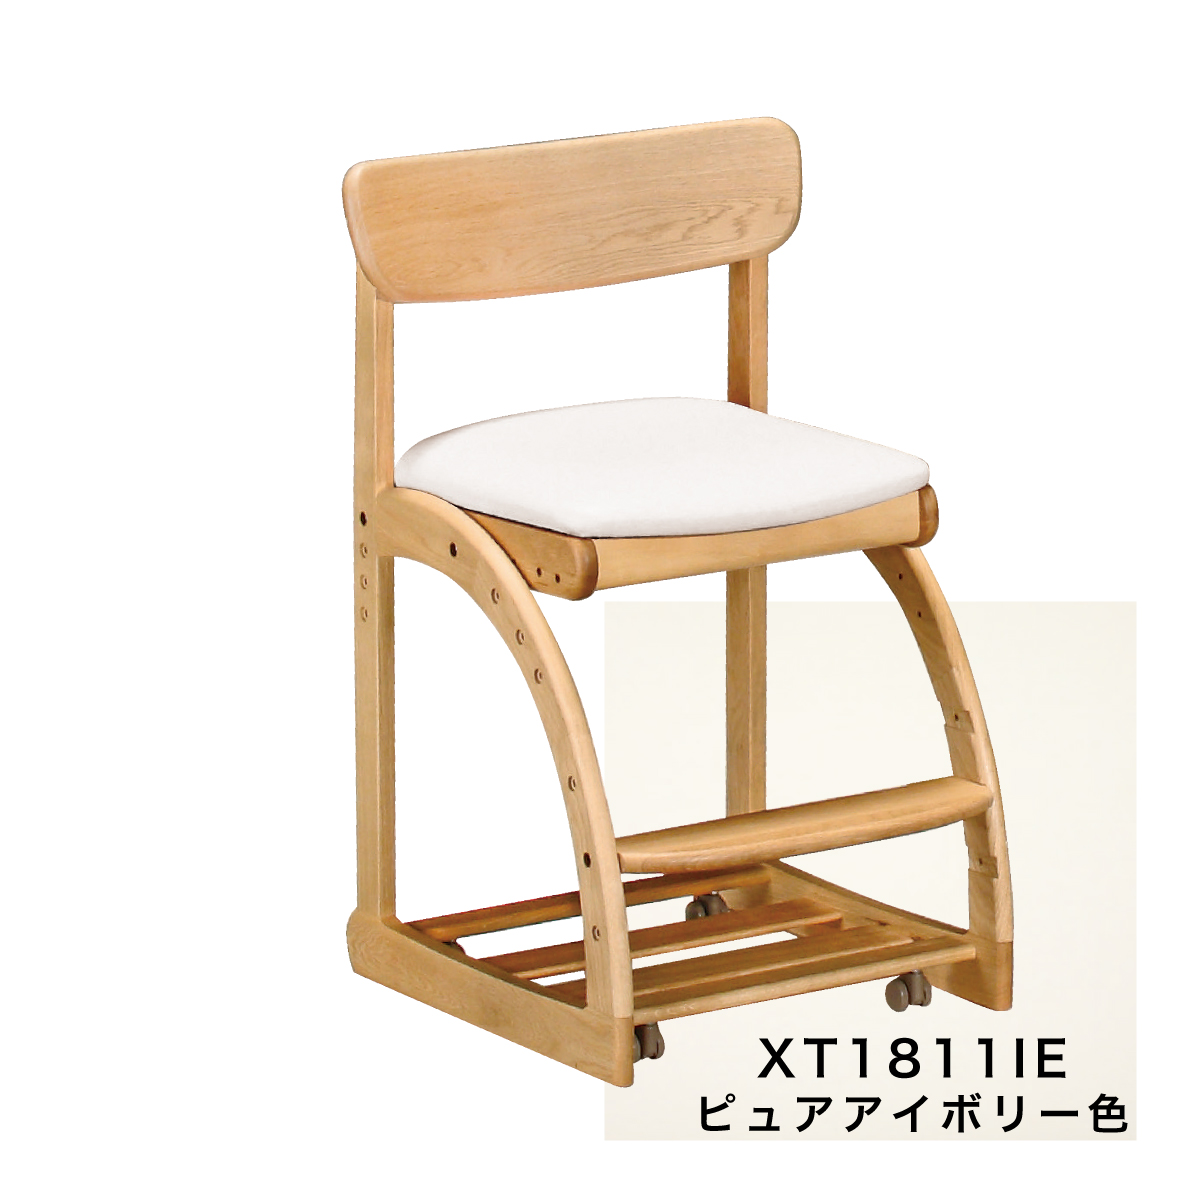 カリモク 学習椅子 木製 XT1811 ピュアオーク色 デスクチェア 学習机 